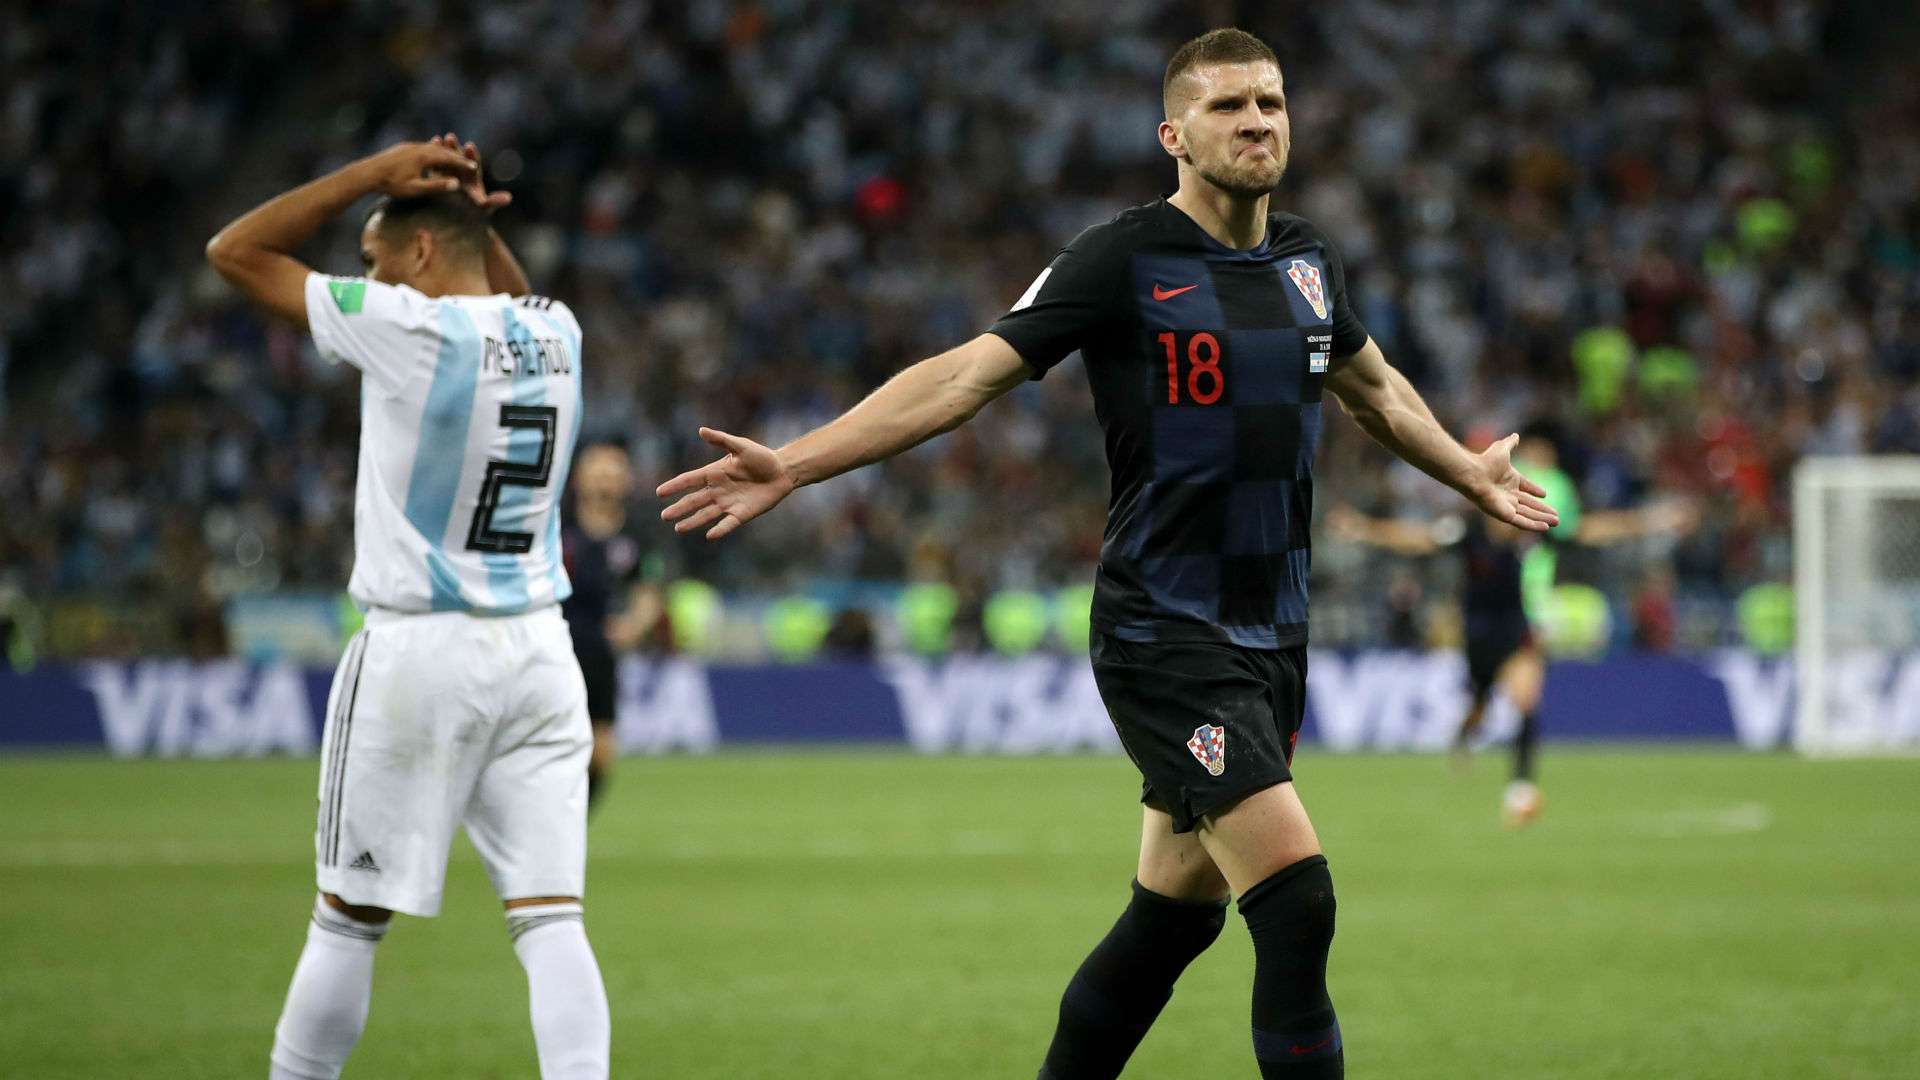 croatia argentina - ante rebic - world cup - 21062018